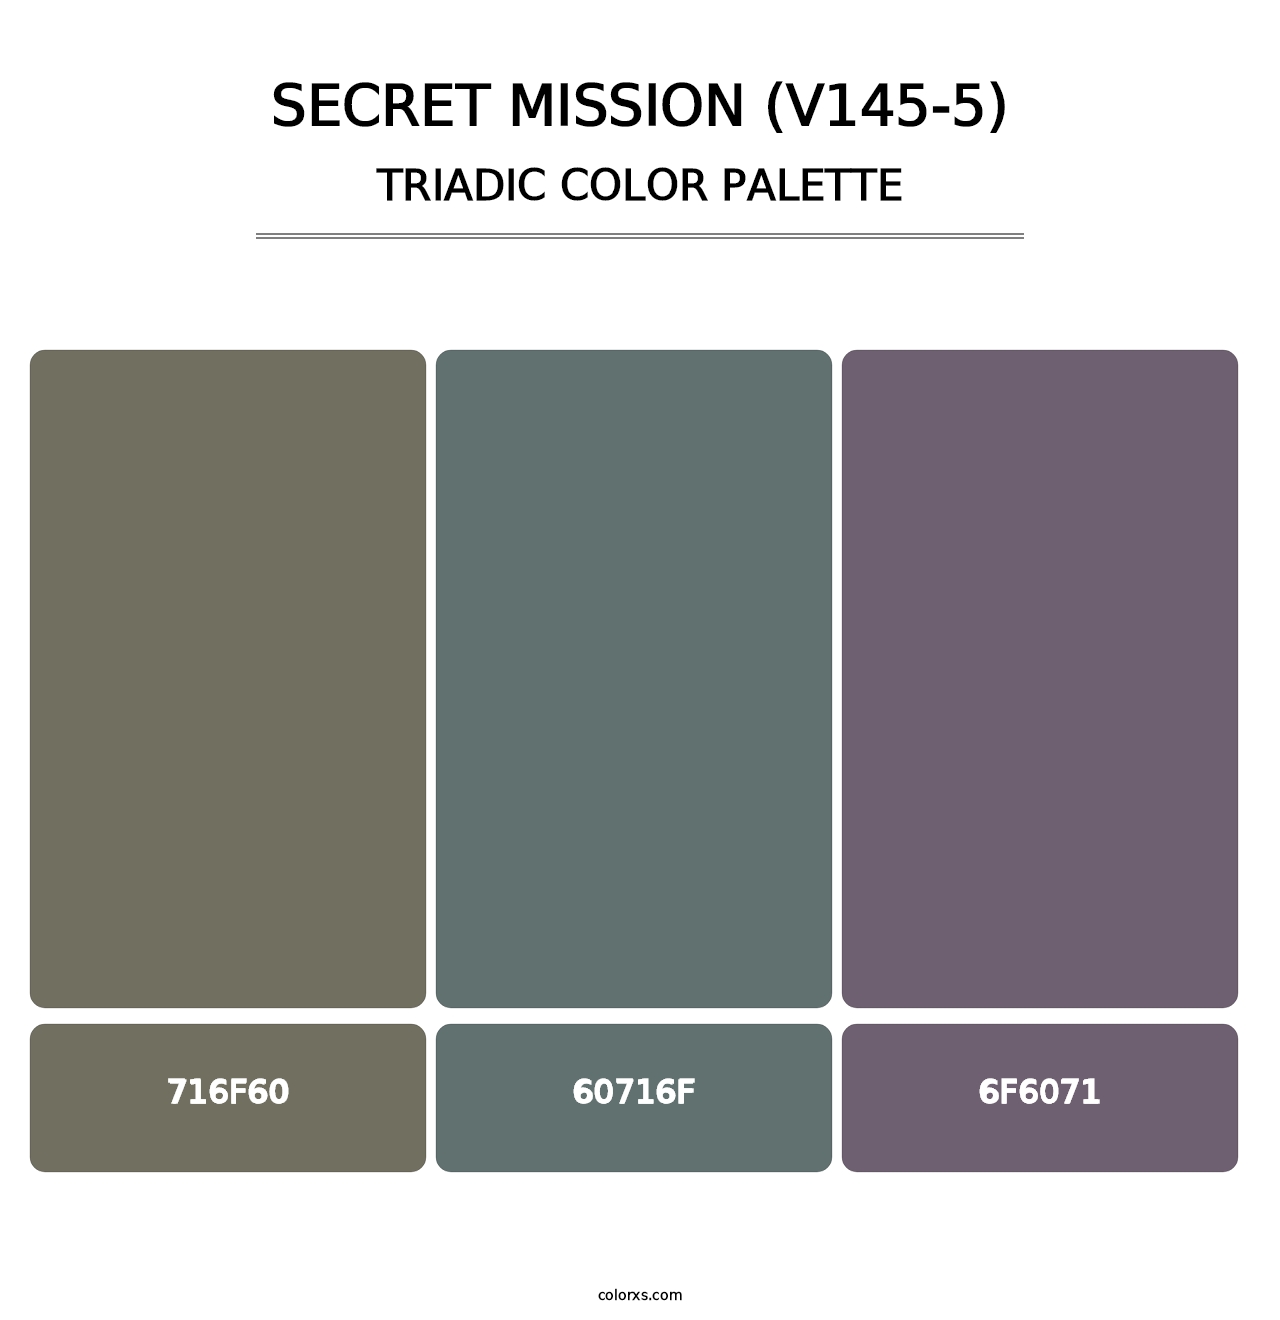 Secret Mission (V145-5) - Triadic Color Palette